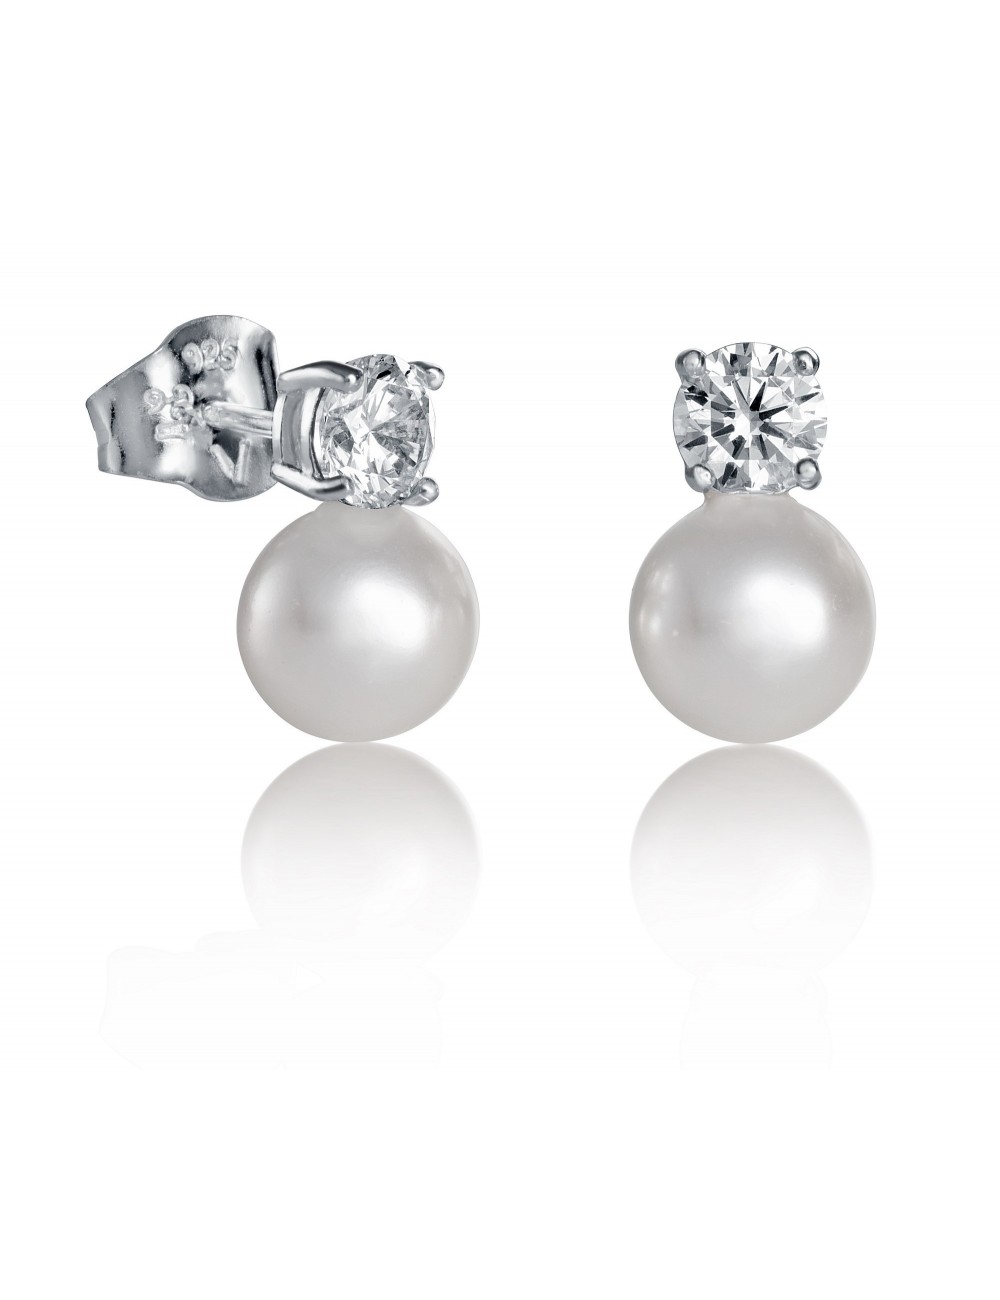 pendientes-viceroy-jewels-perla-circonita-plata-21017e000-60